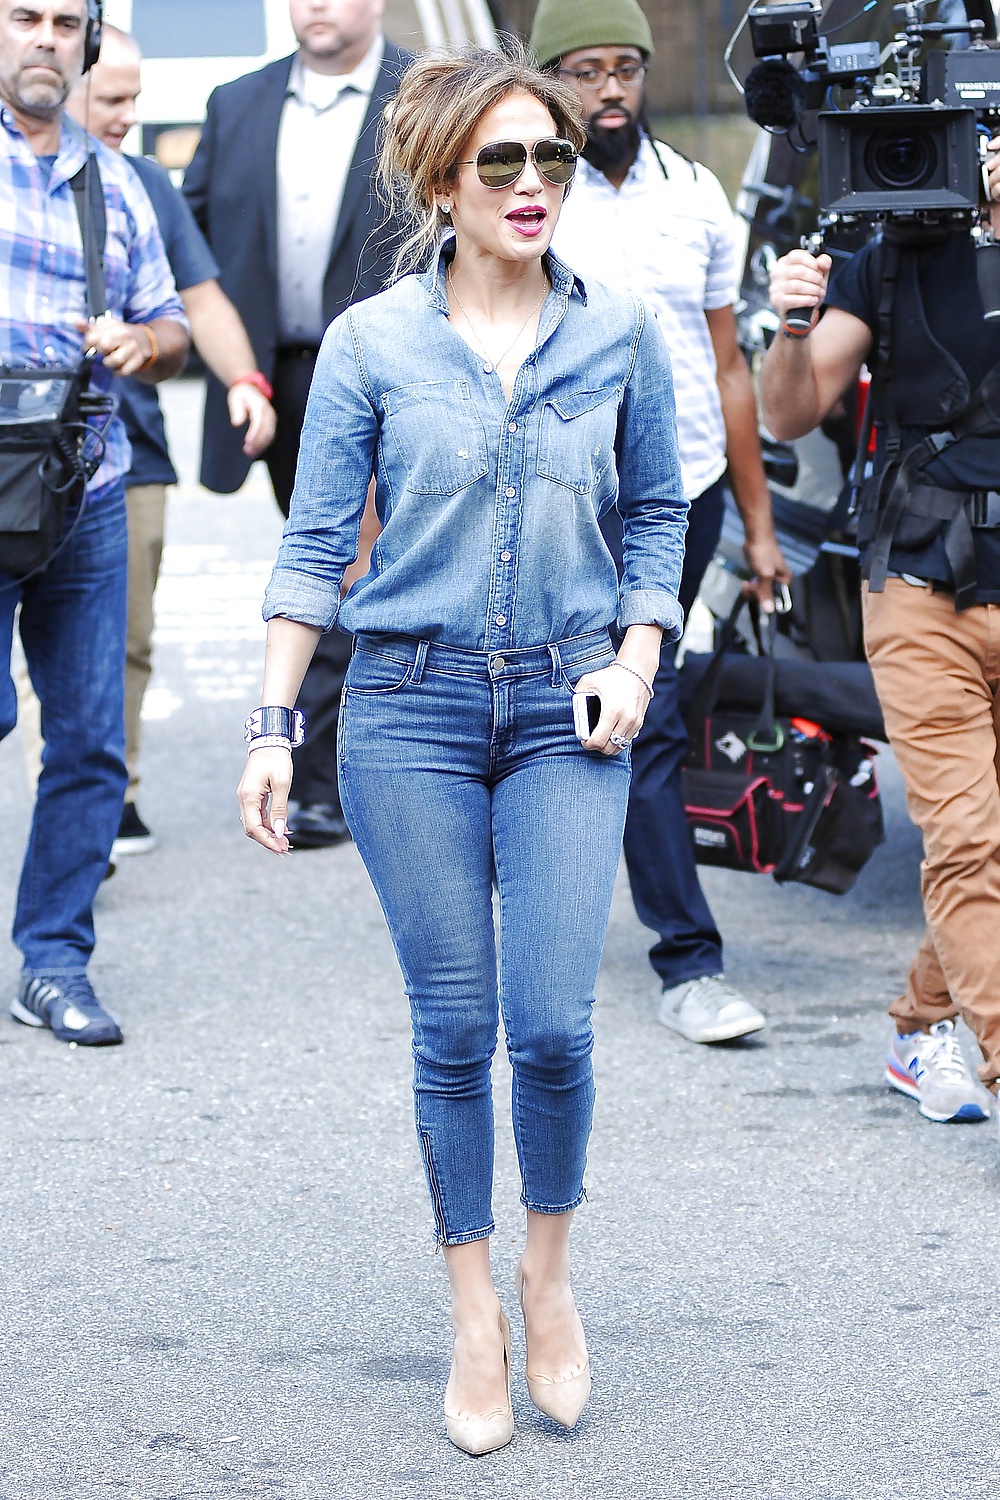 Jennifer Lopez Booty in jeans #32194202